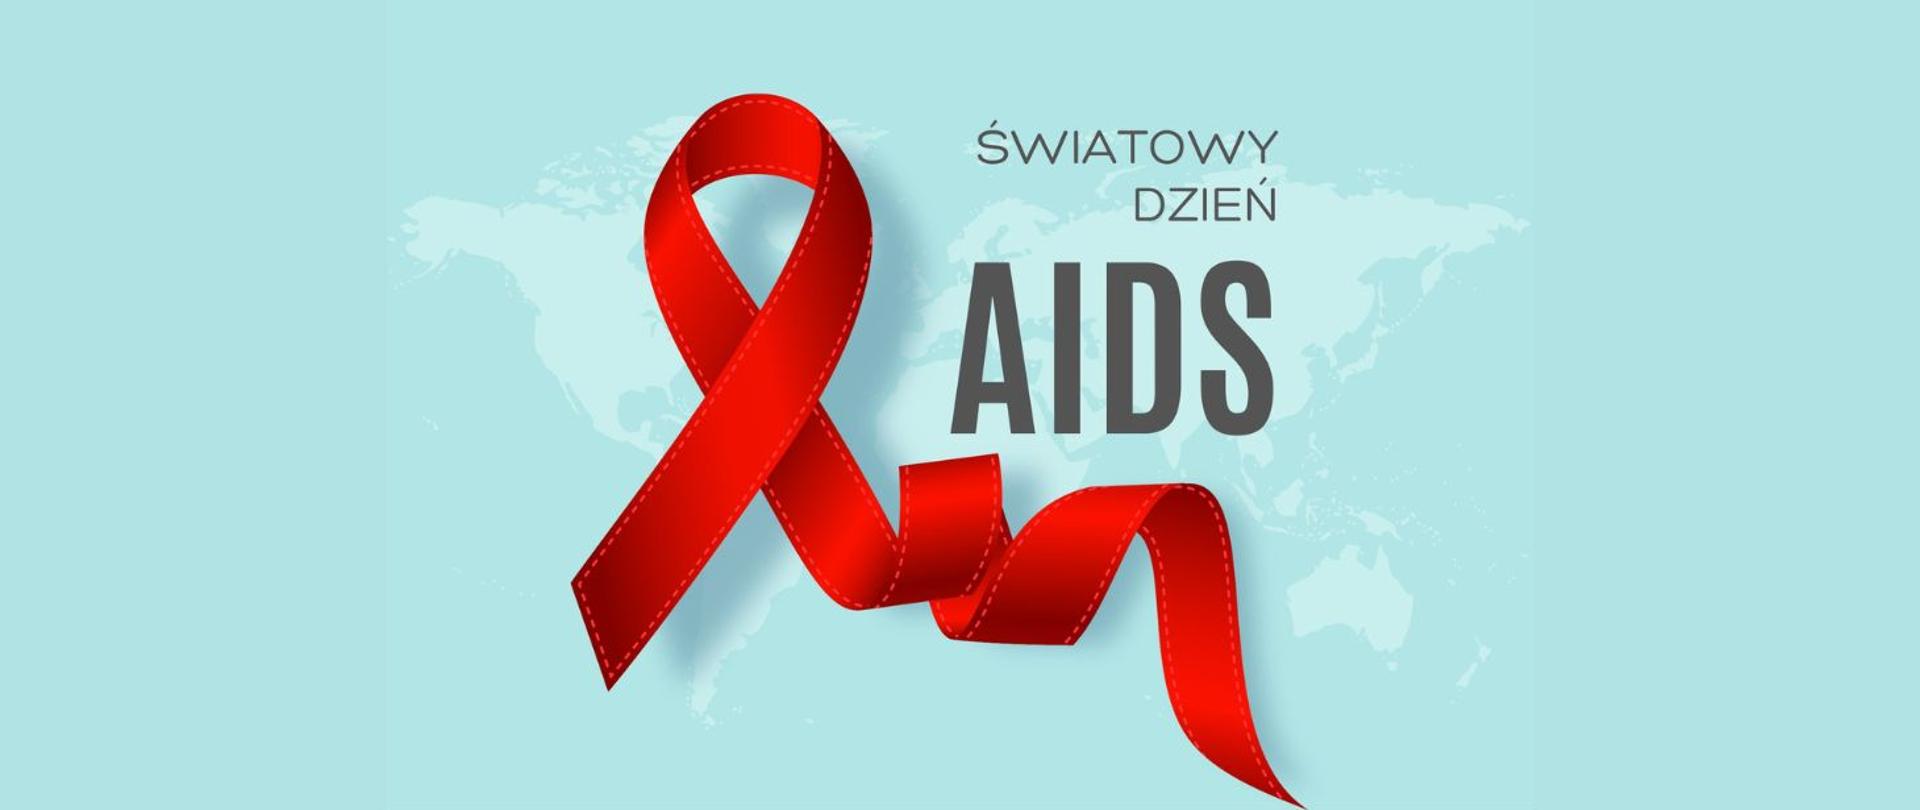 Światowy Dzień AIDS 2023